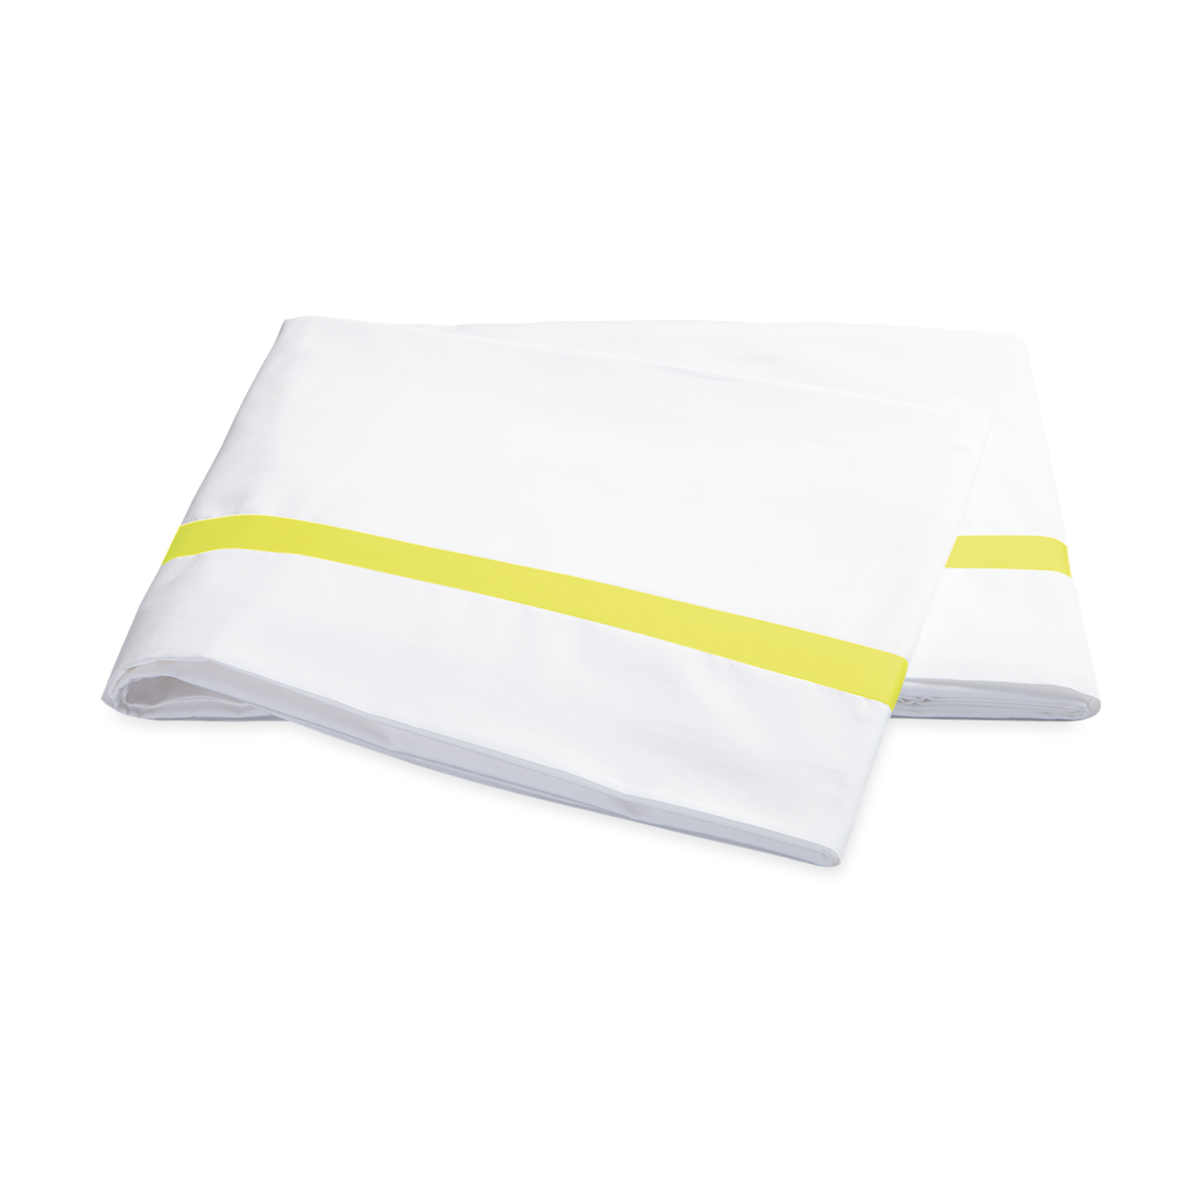 Folded Flat Sheet of Matouk Lowell Bedding Pillowcases in Lemon Color